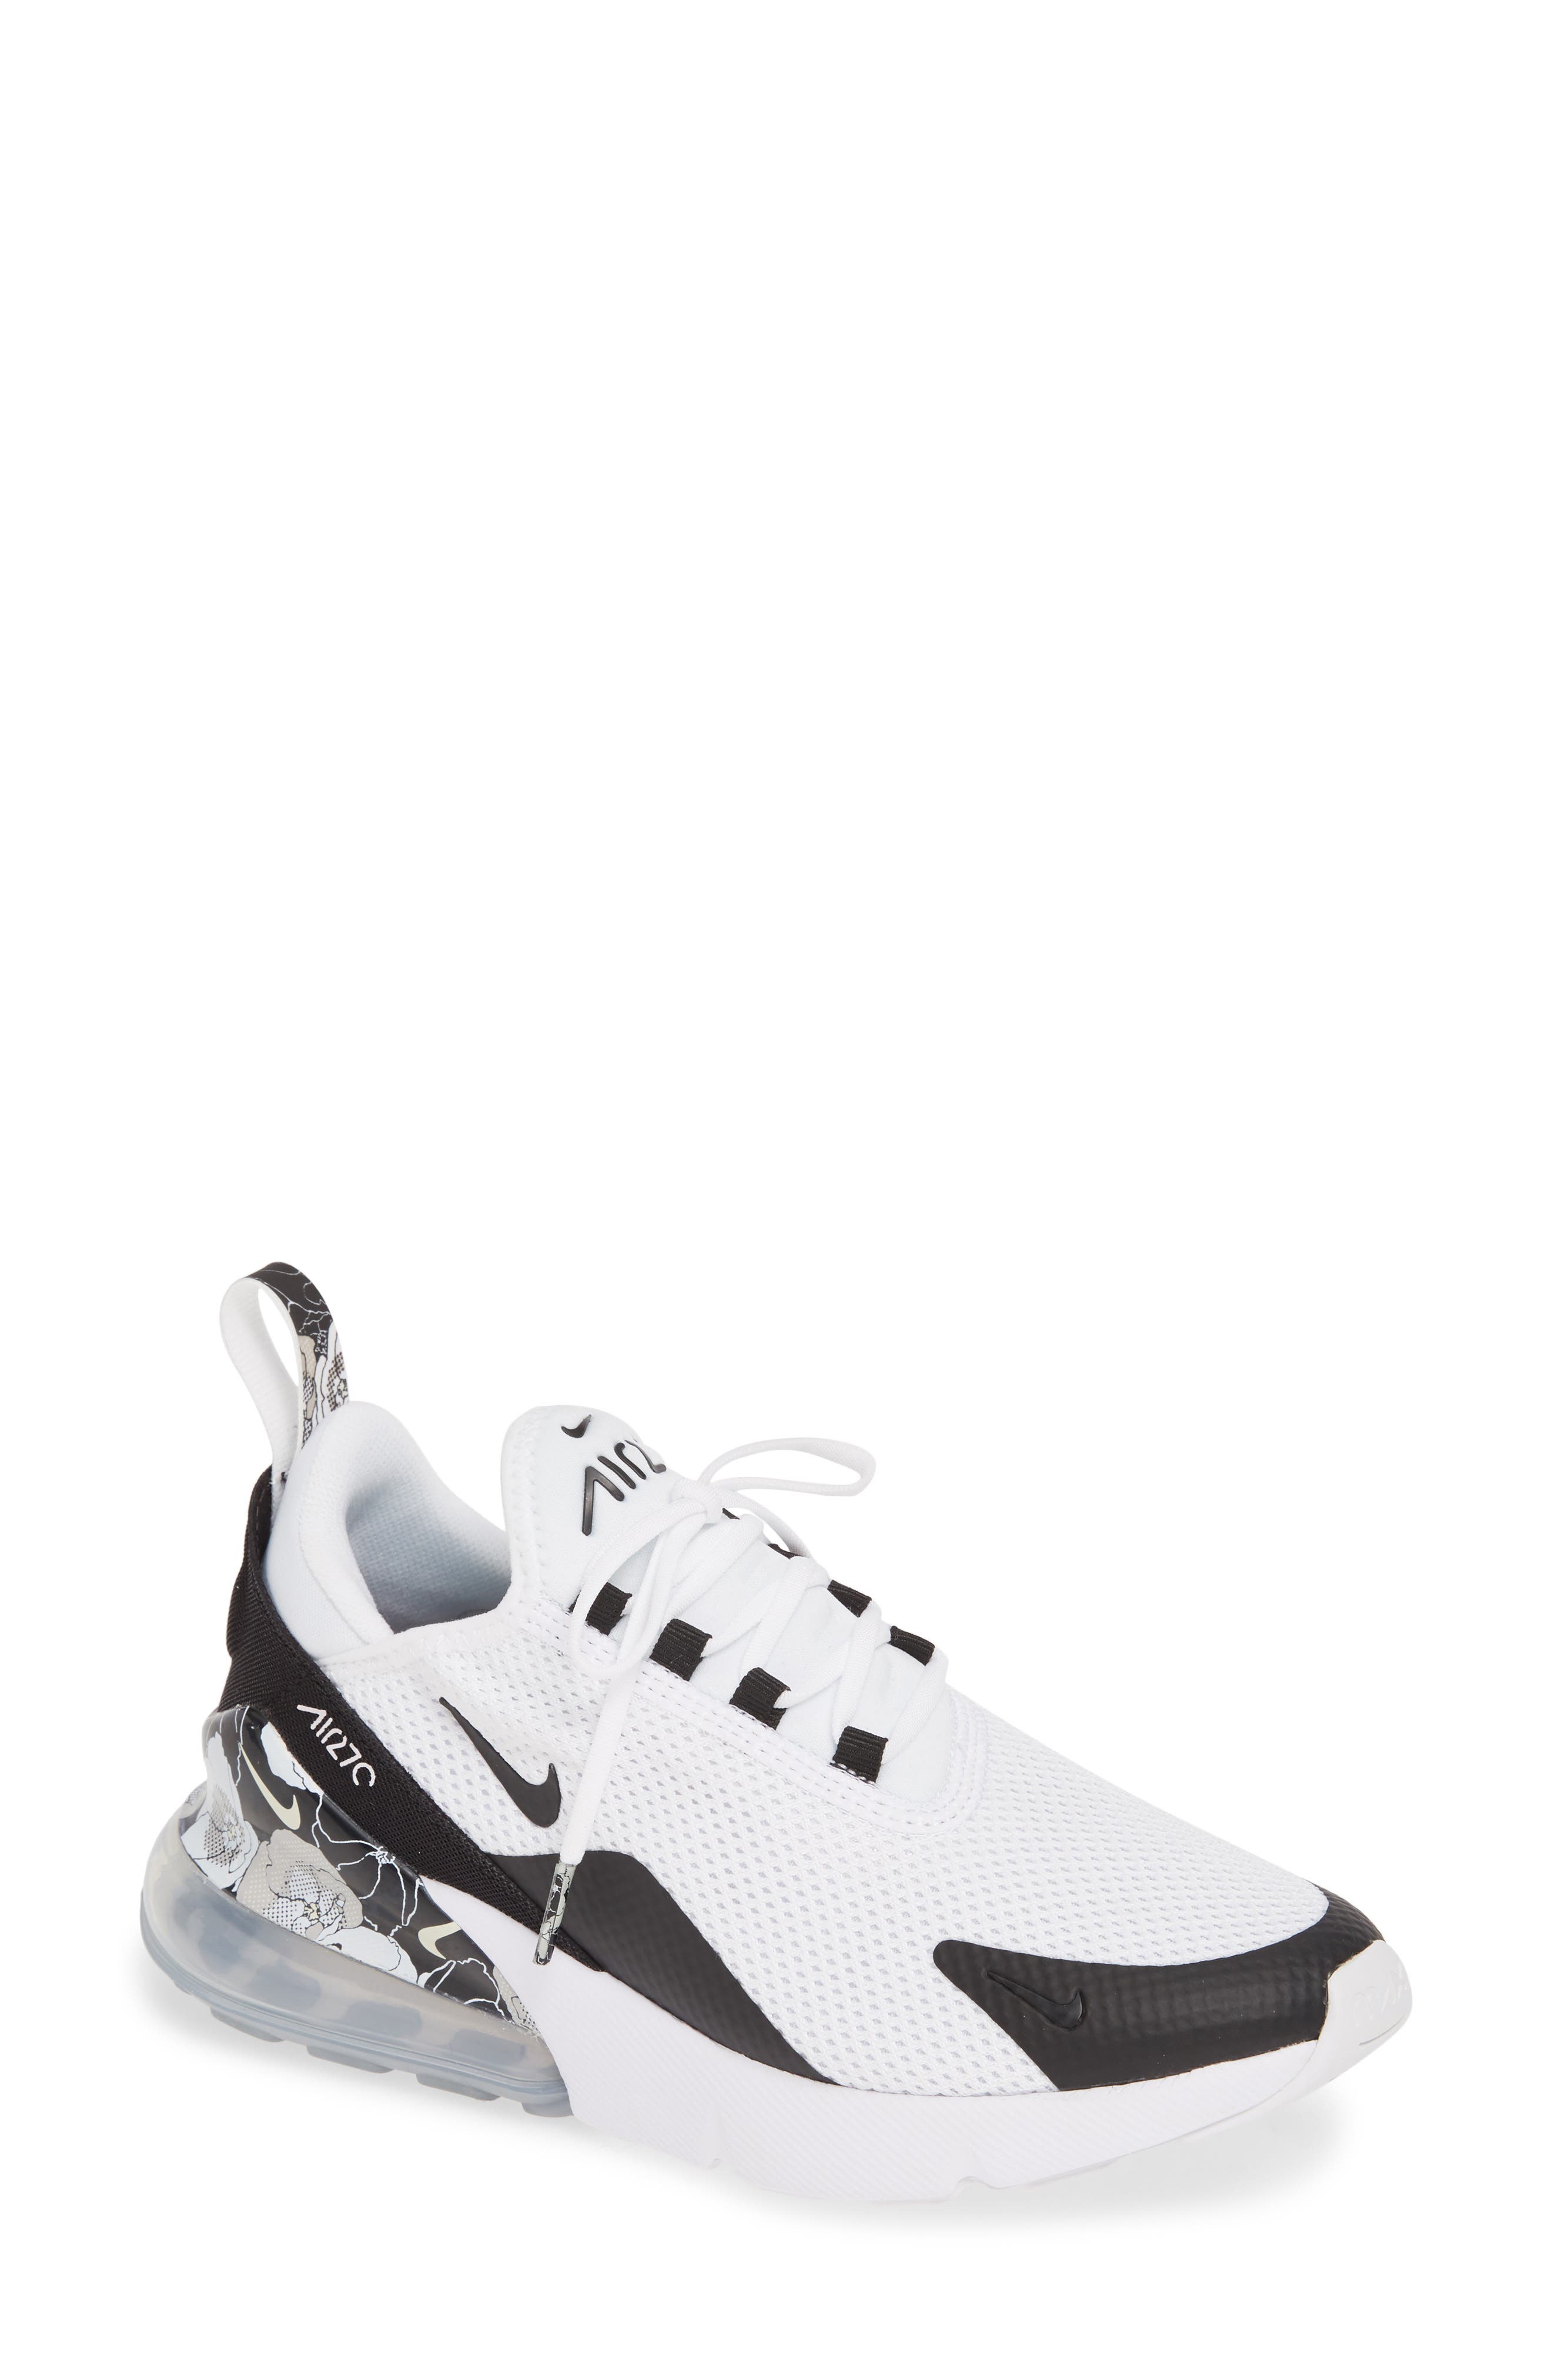 Nike | Air Max 270 Premium Sneaker 